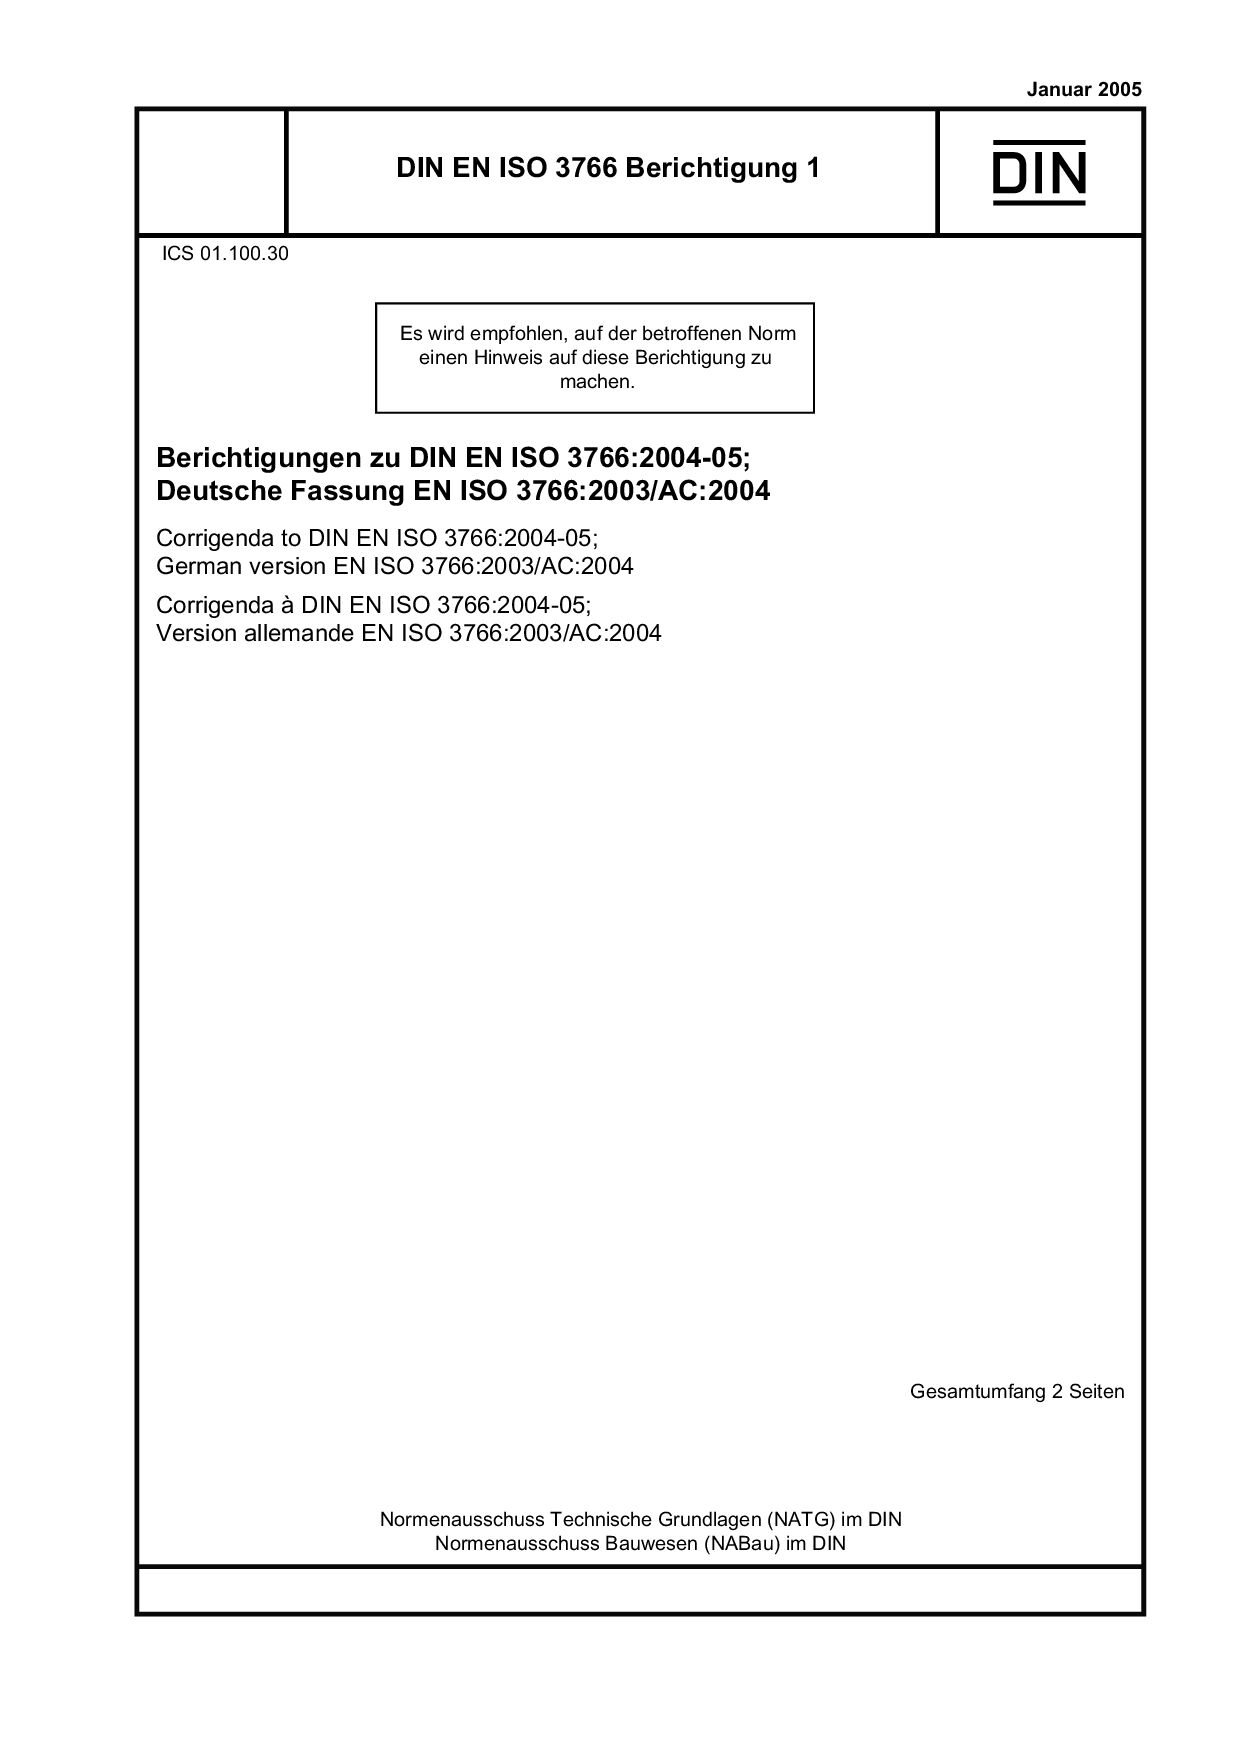 DIN EN ISO 3766 Berichtigung 1:2005-01封面图